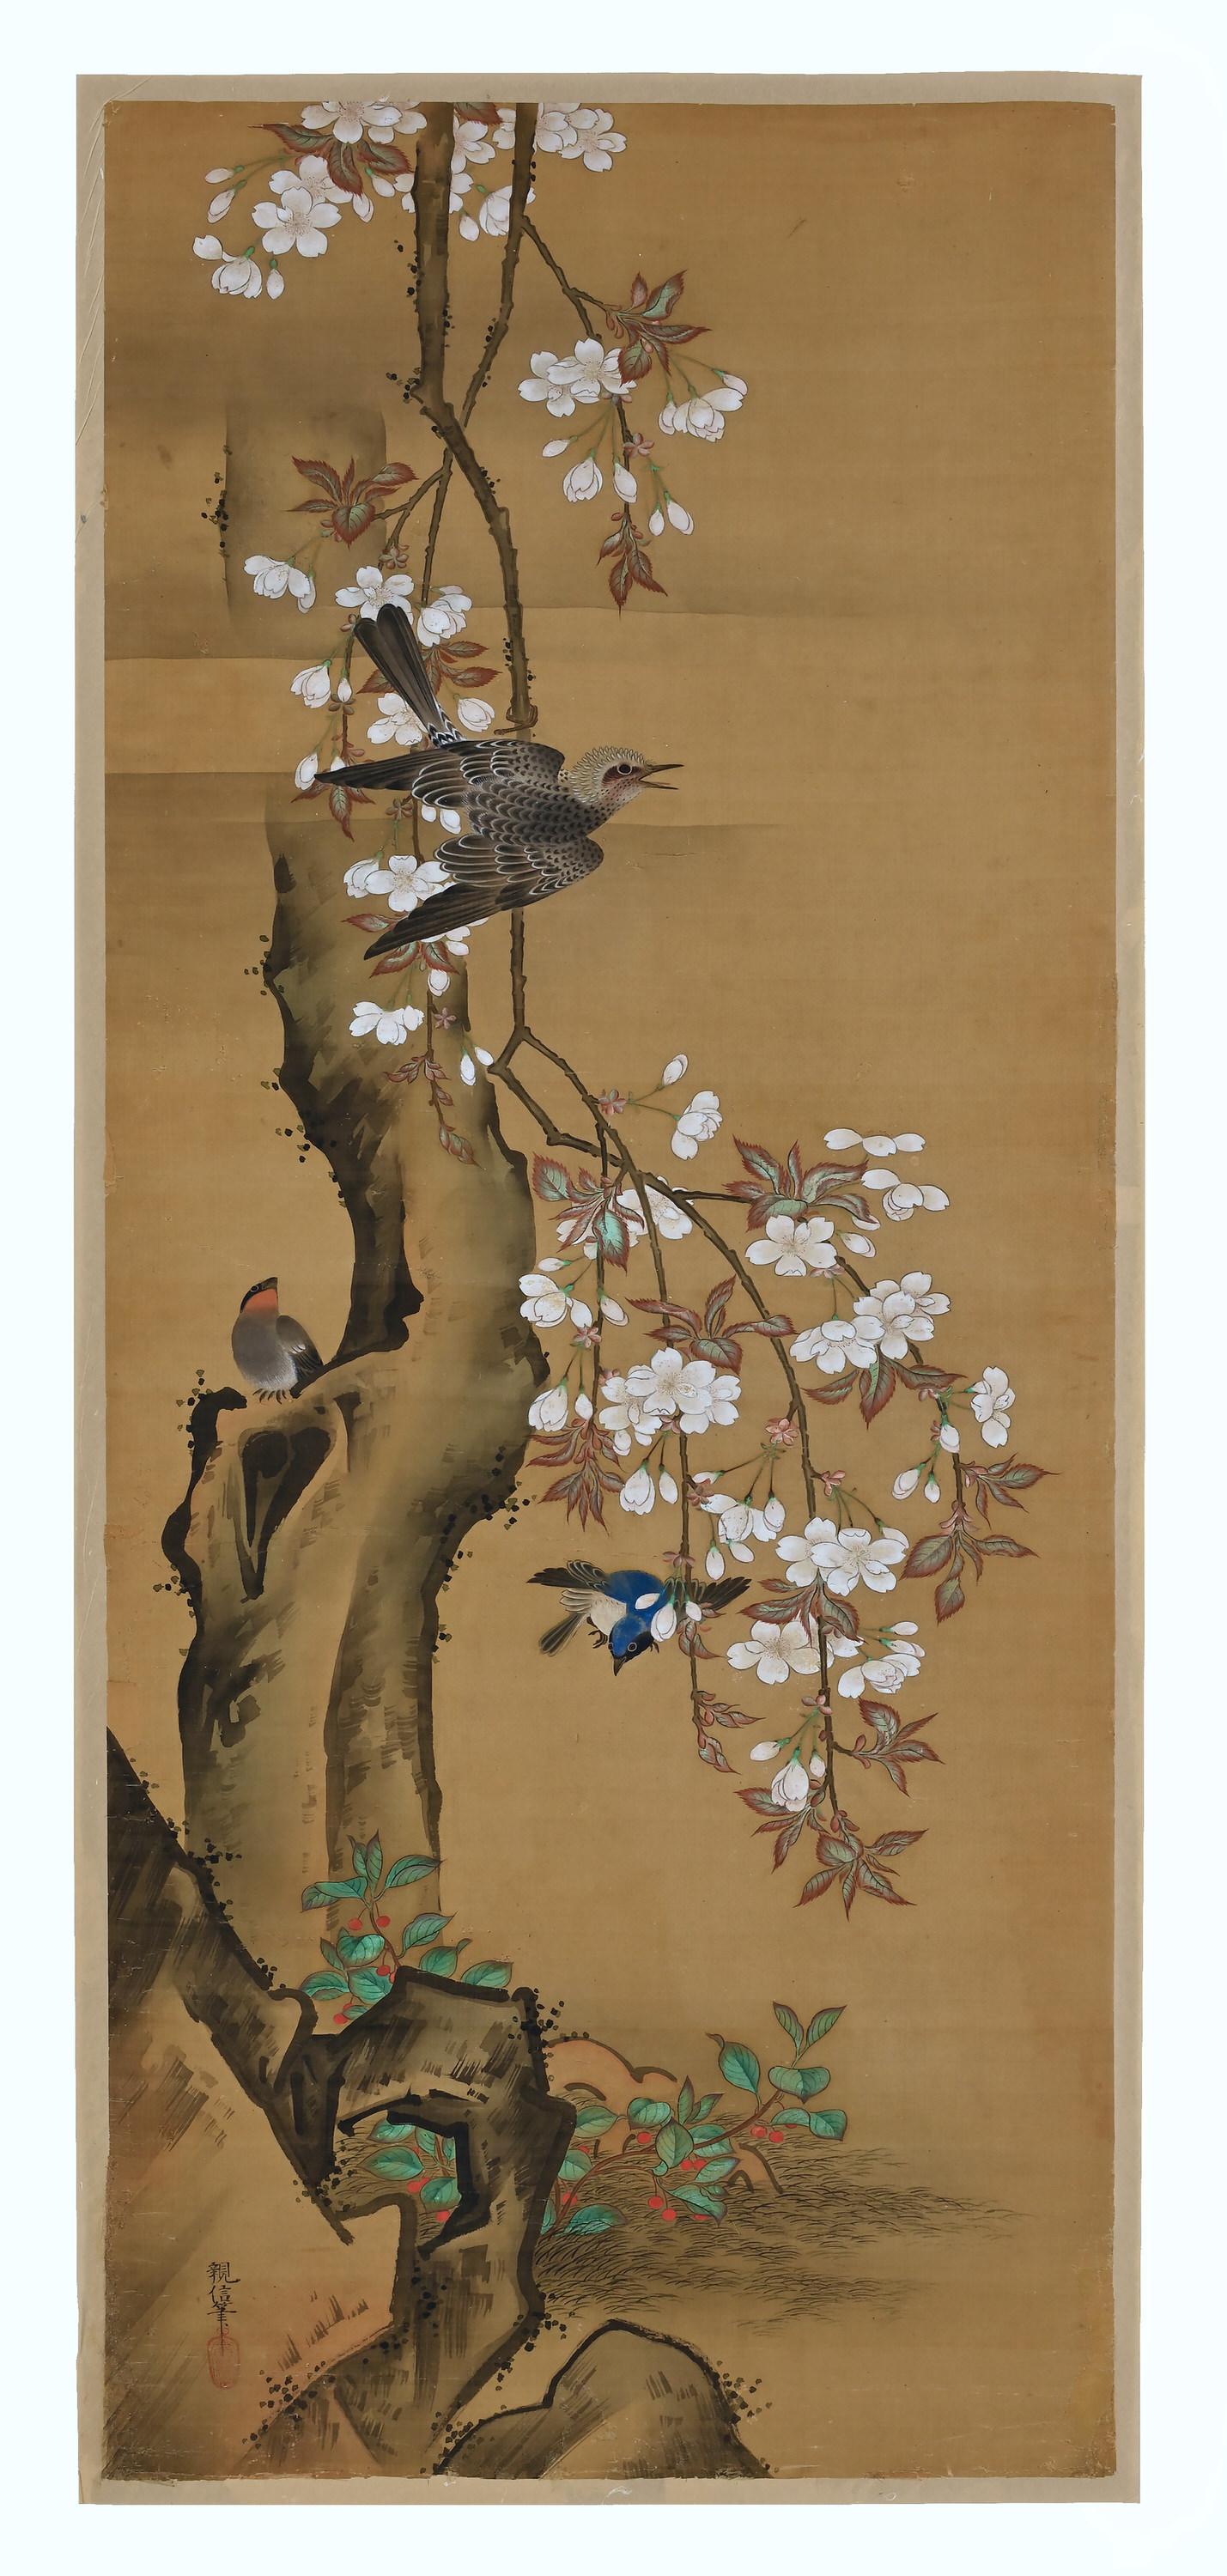 Asian 19th Century Japanese Silk Painting by Kano Chikanobu, Cherry Blossom & Birds